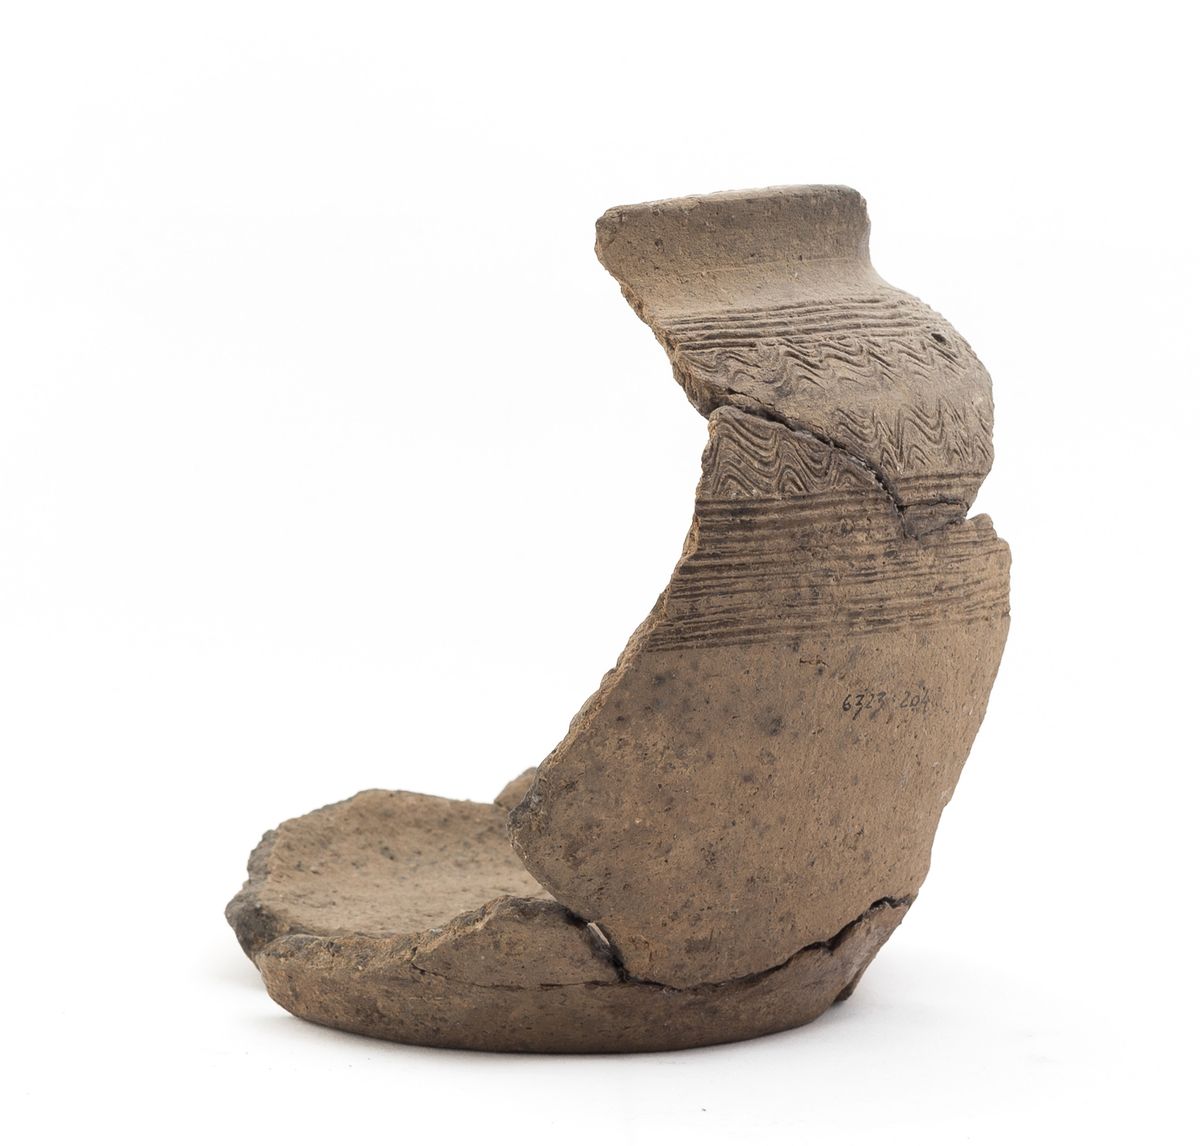 Sarnast keraamikat on leitud ka Pikk 33b arheoloogilistel kaevamistel